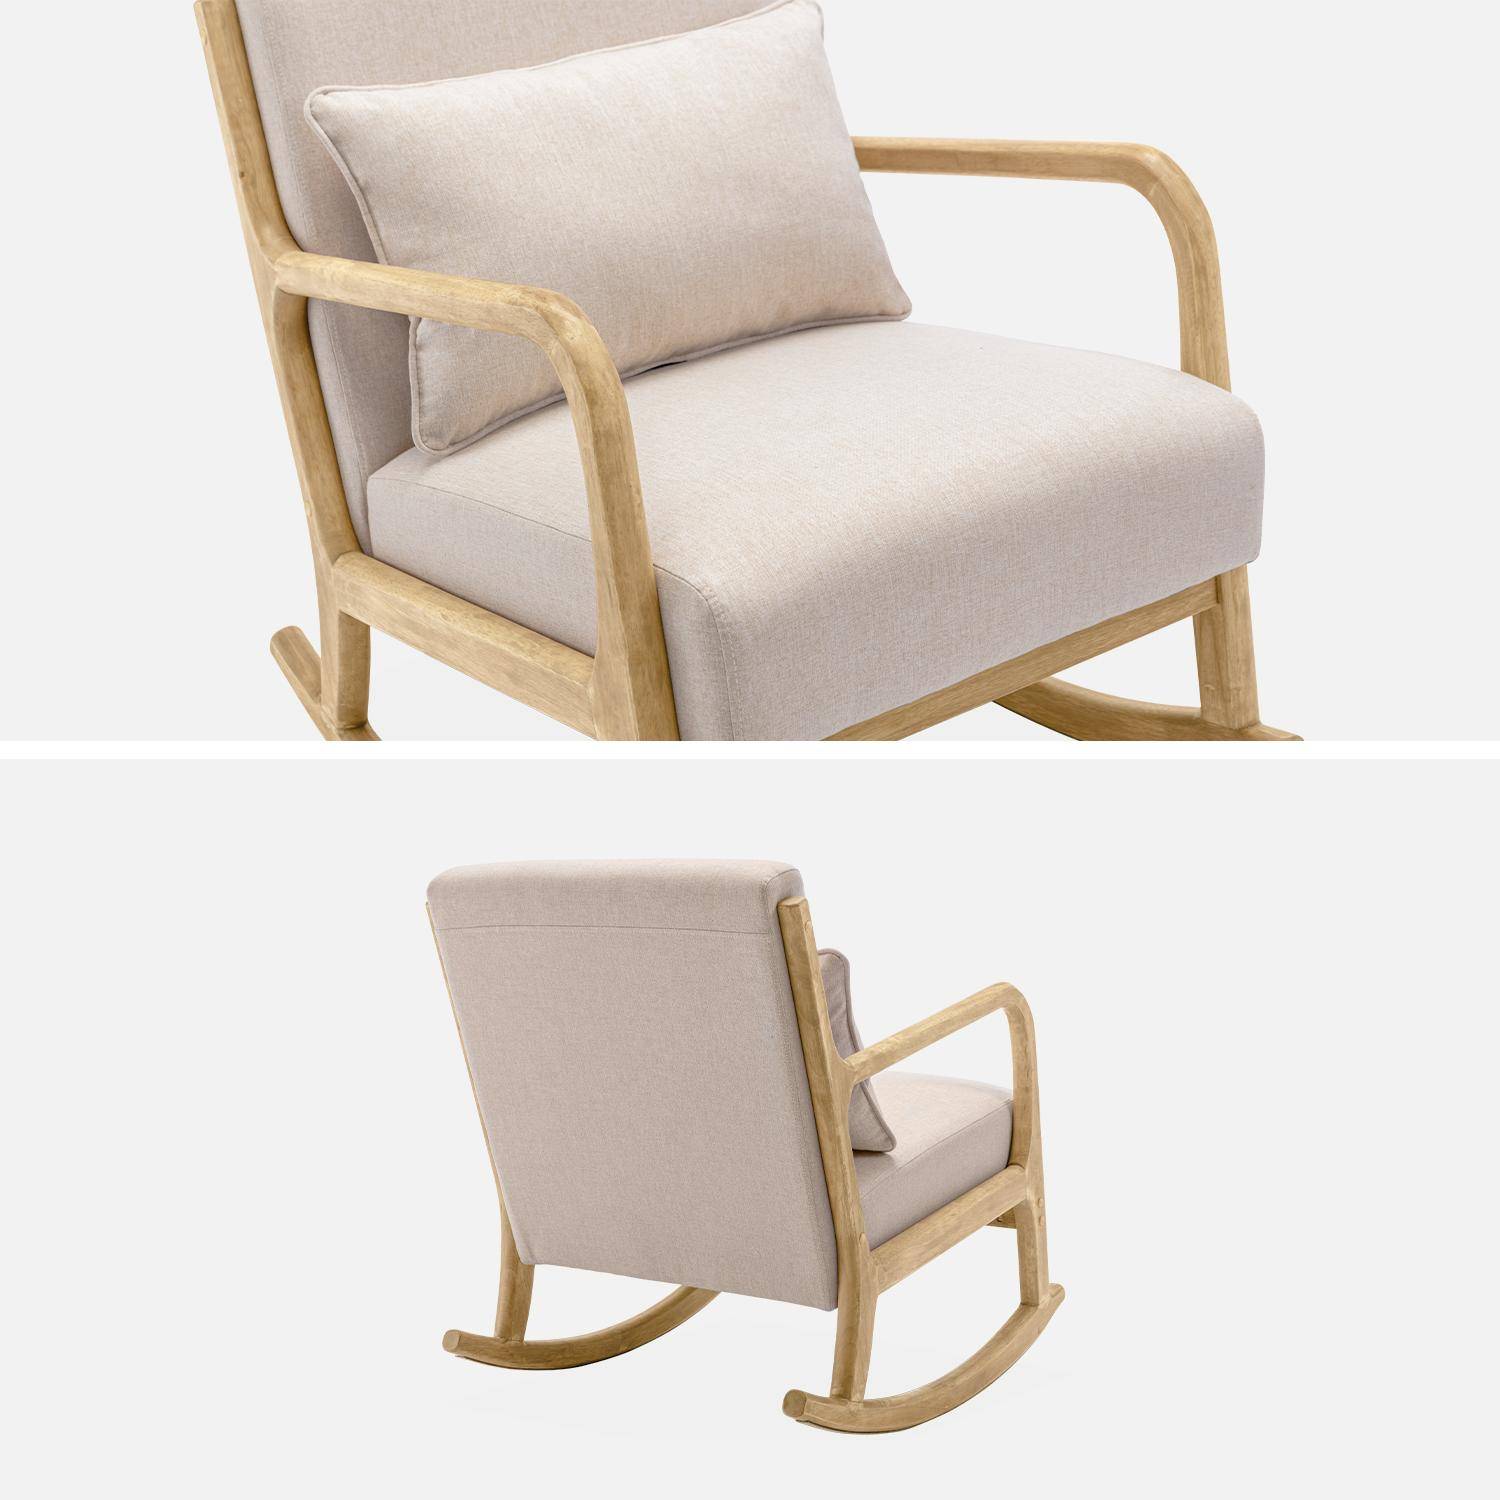 Fauteuil à bascule design en bois et tissu, 1 place, rocking chair scandinave, beige Photo5